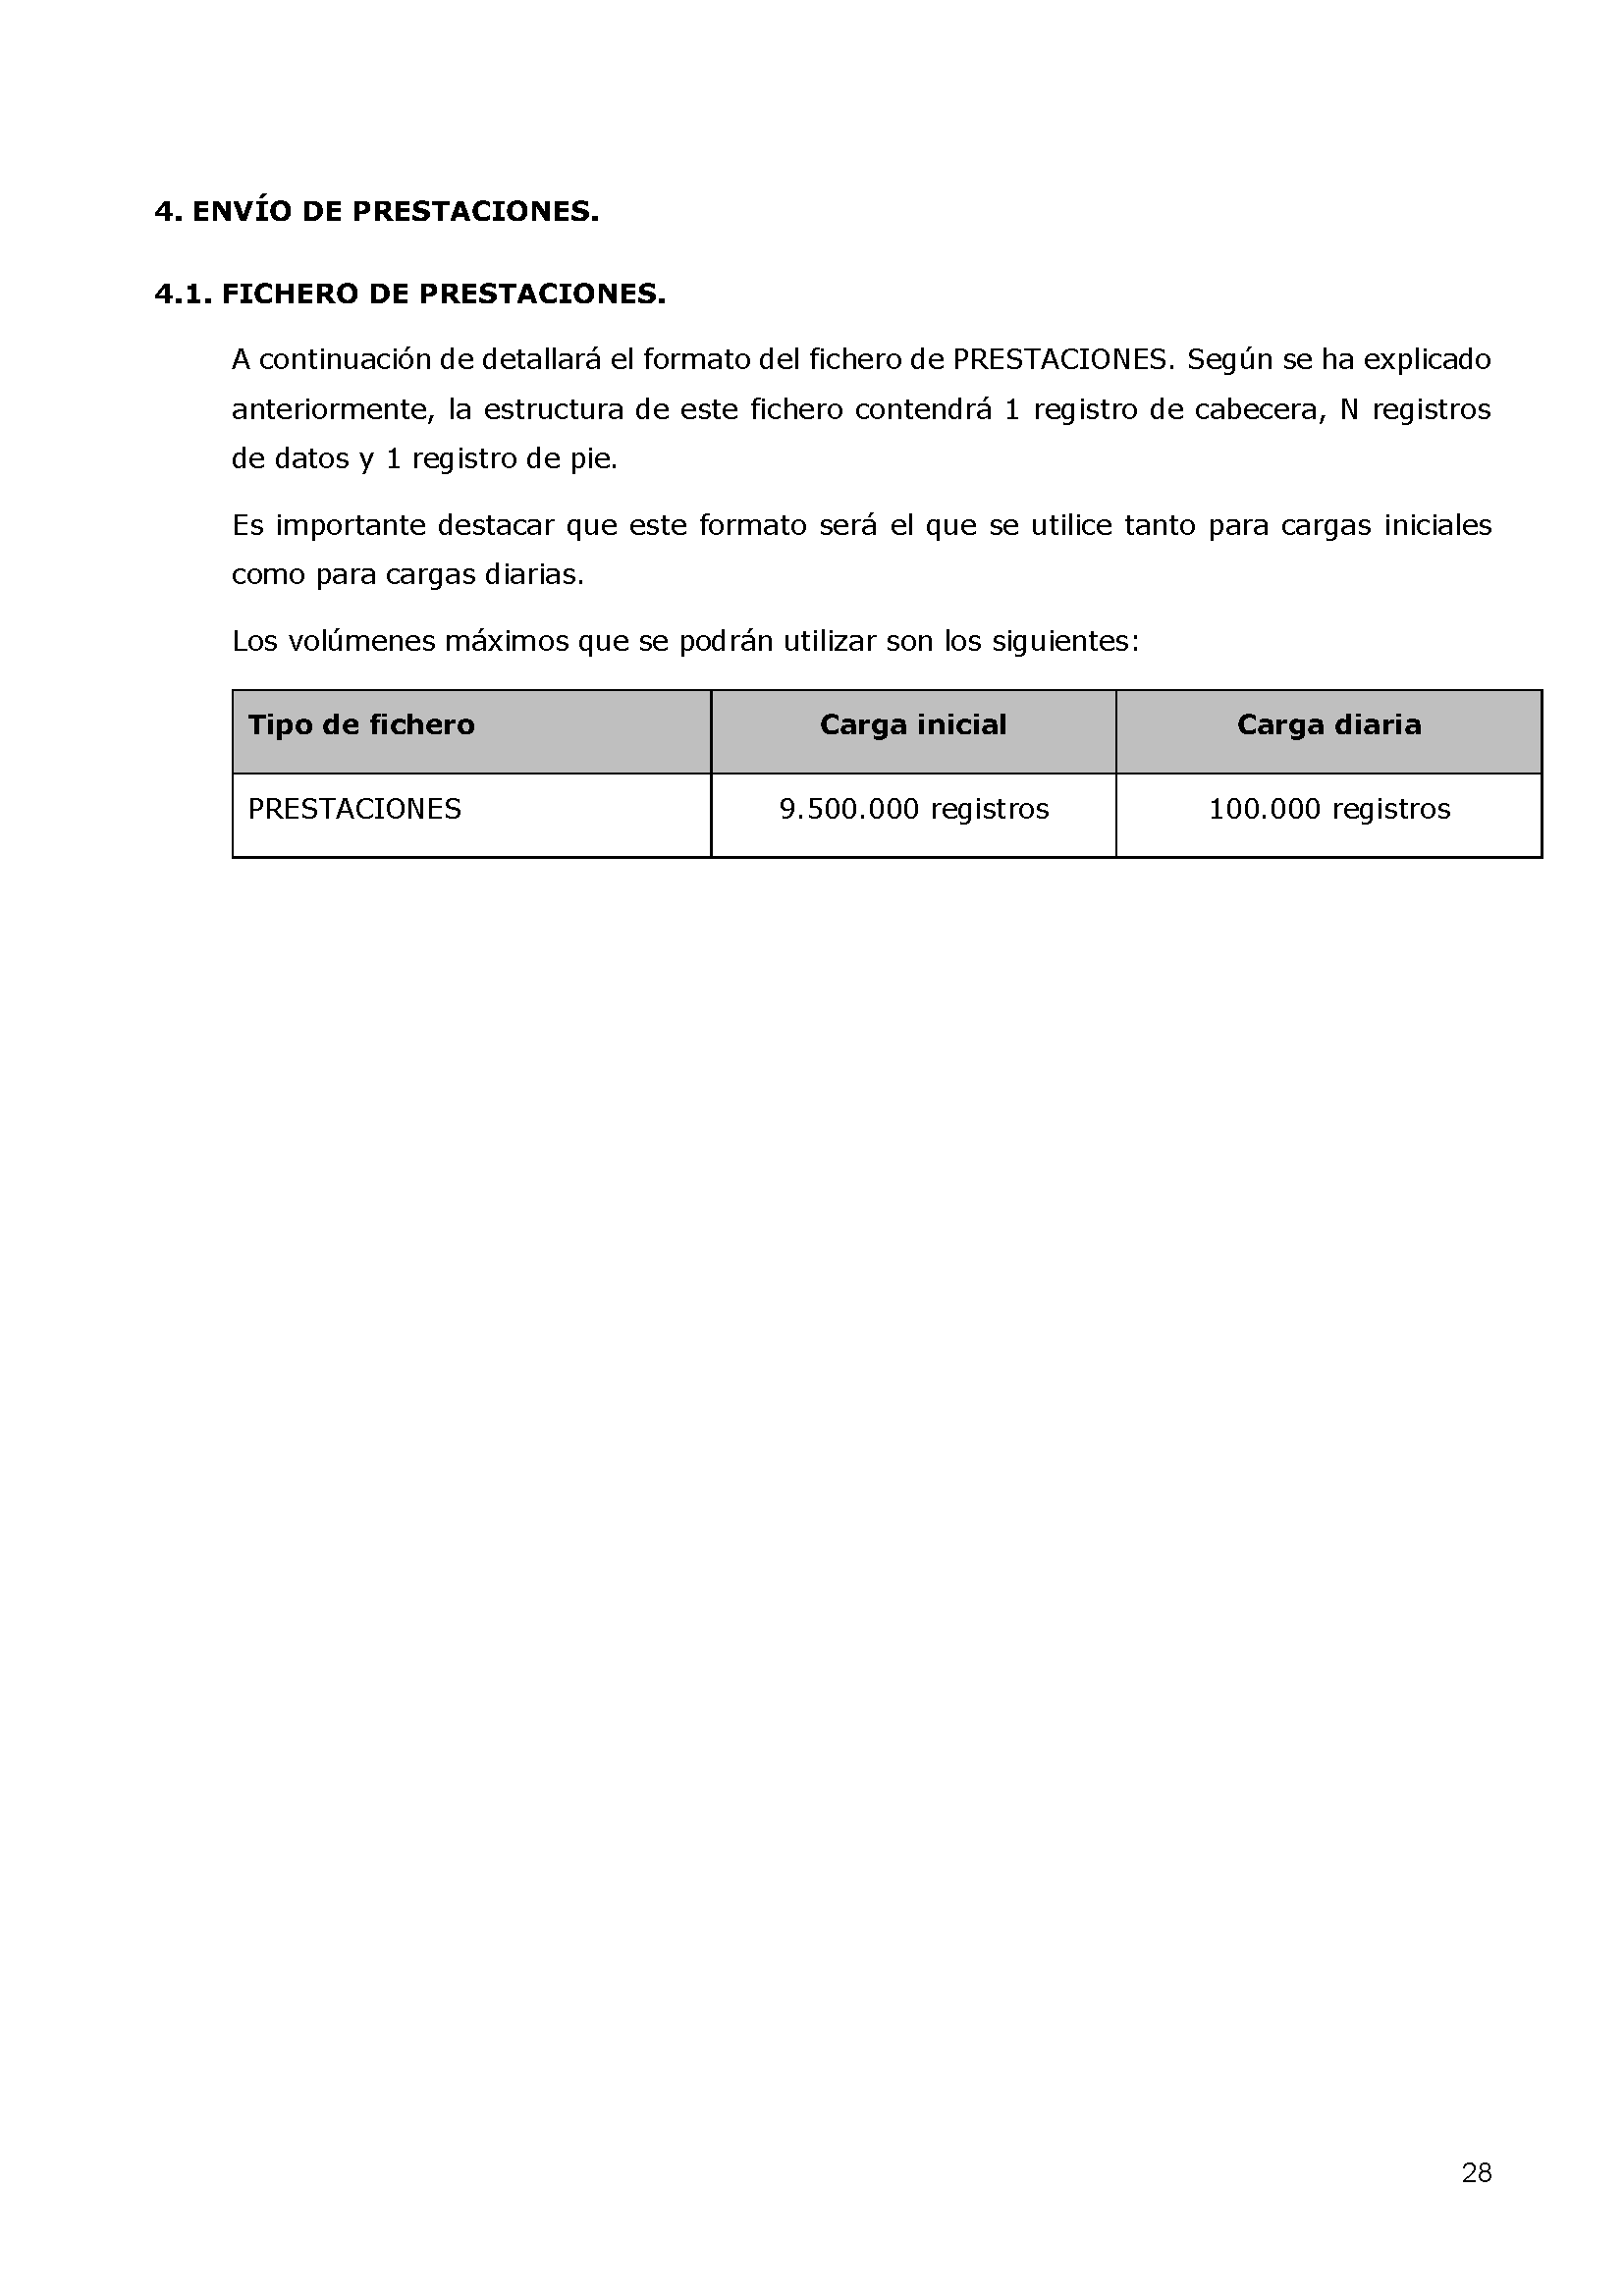 ANEXOS PROTOCOLO DE INTERCAMBIO DE FICHEROS PARA LA CARGA DE DATOS EN TARJETA SOCIAL DIGITAL Pag 28